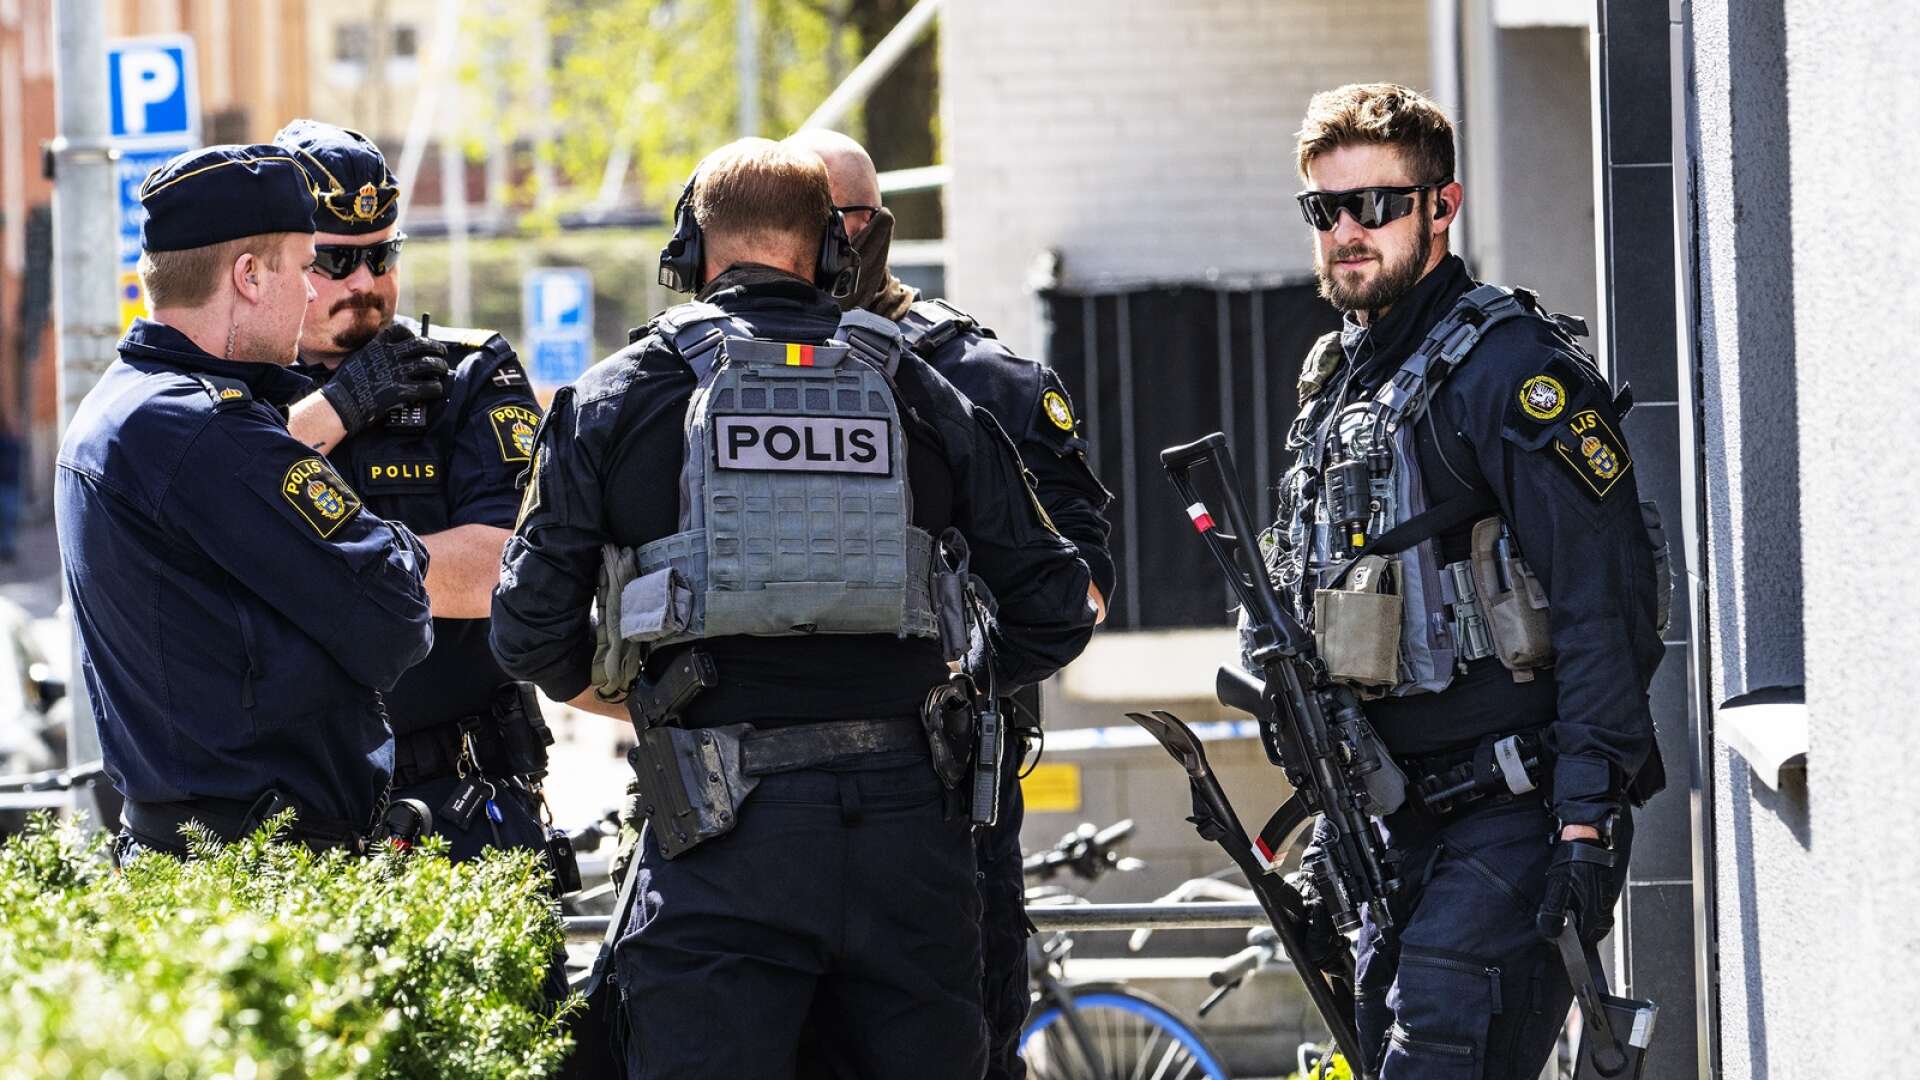 Insatsstyrkan kallades in tillsammans med flera andra polispatruller i jakten på den misstänkte gärningsmannen. Han ska dock ha stuckit ganska omgående mot Göteborg.